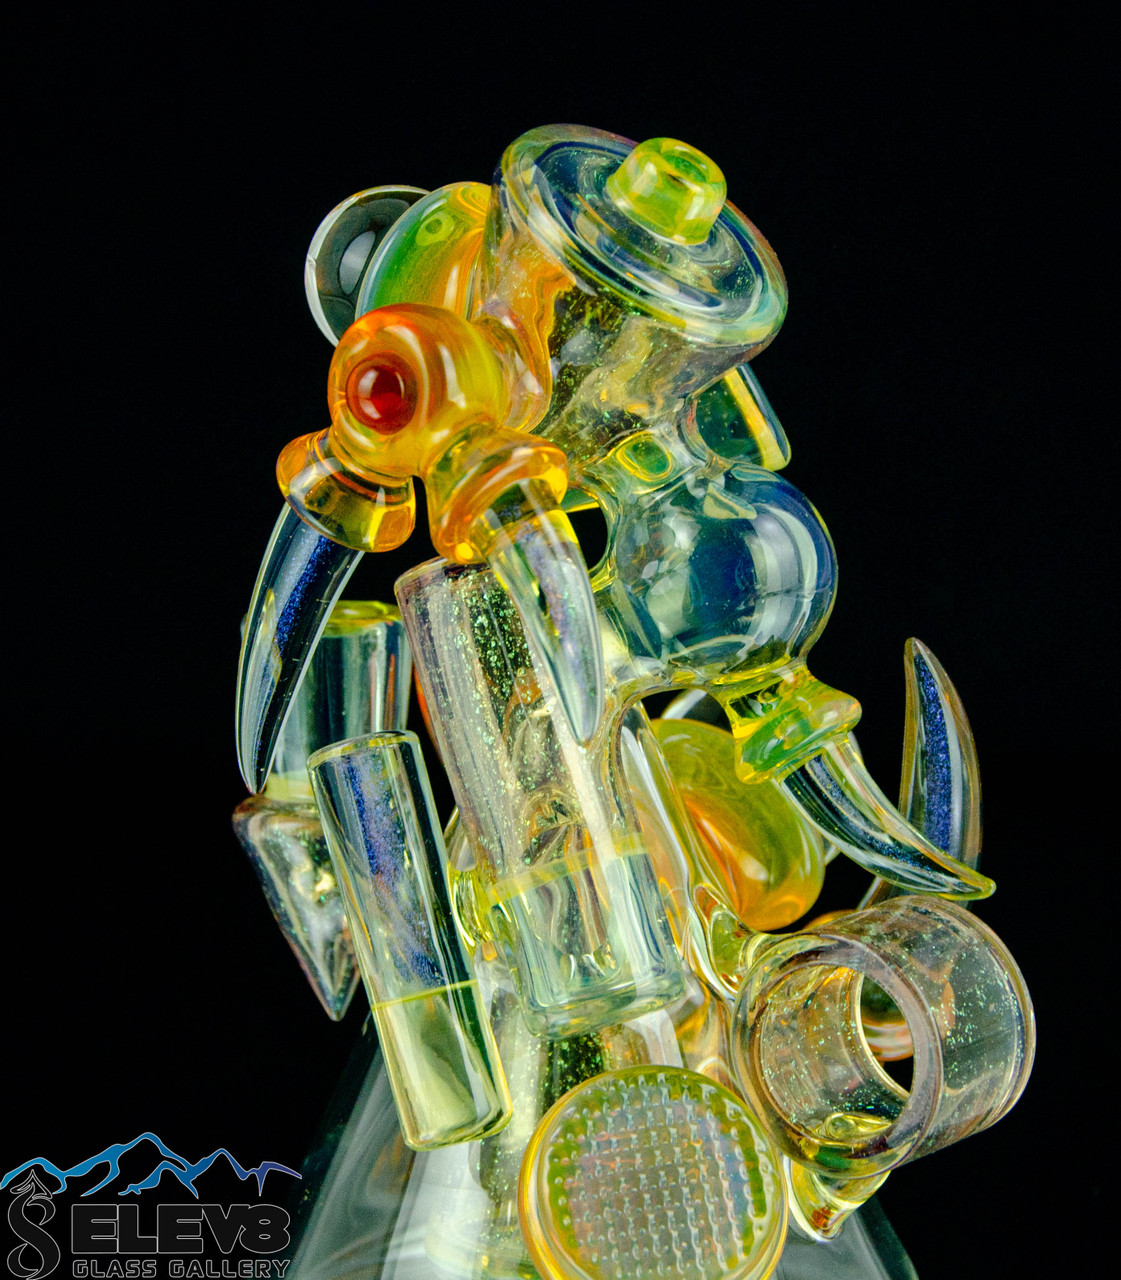 EDDY Tall Glass Set of 4 by BOMSHBEE - FabFitFun